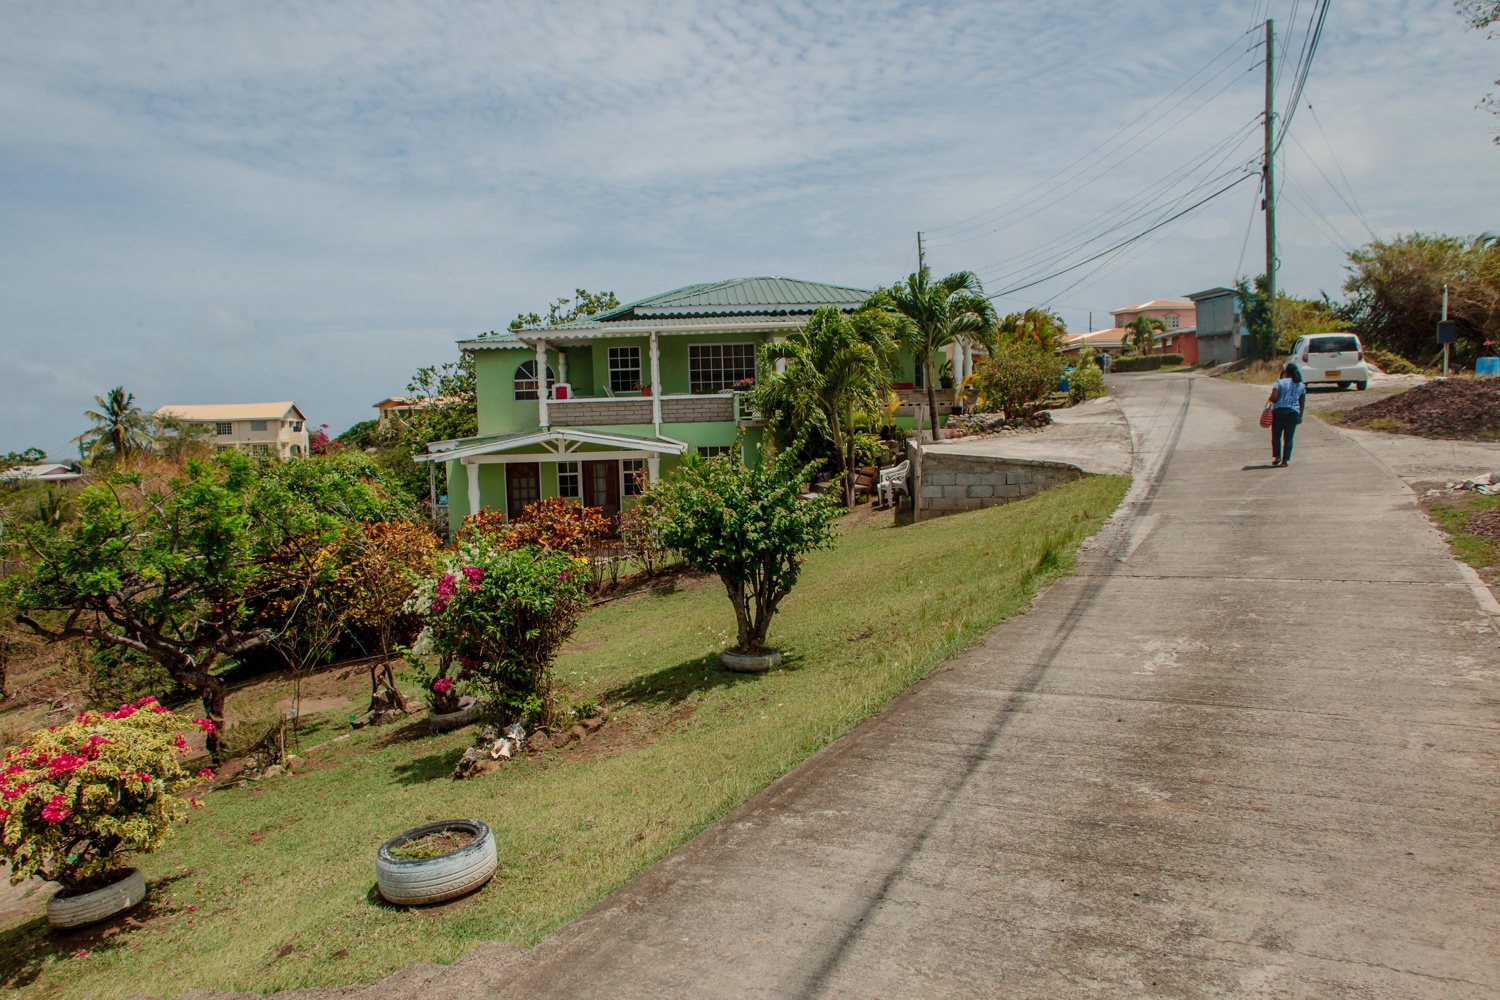 Гренада. Часть II 